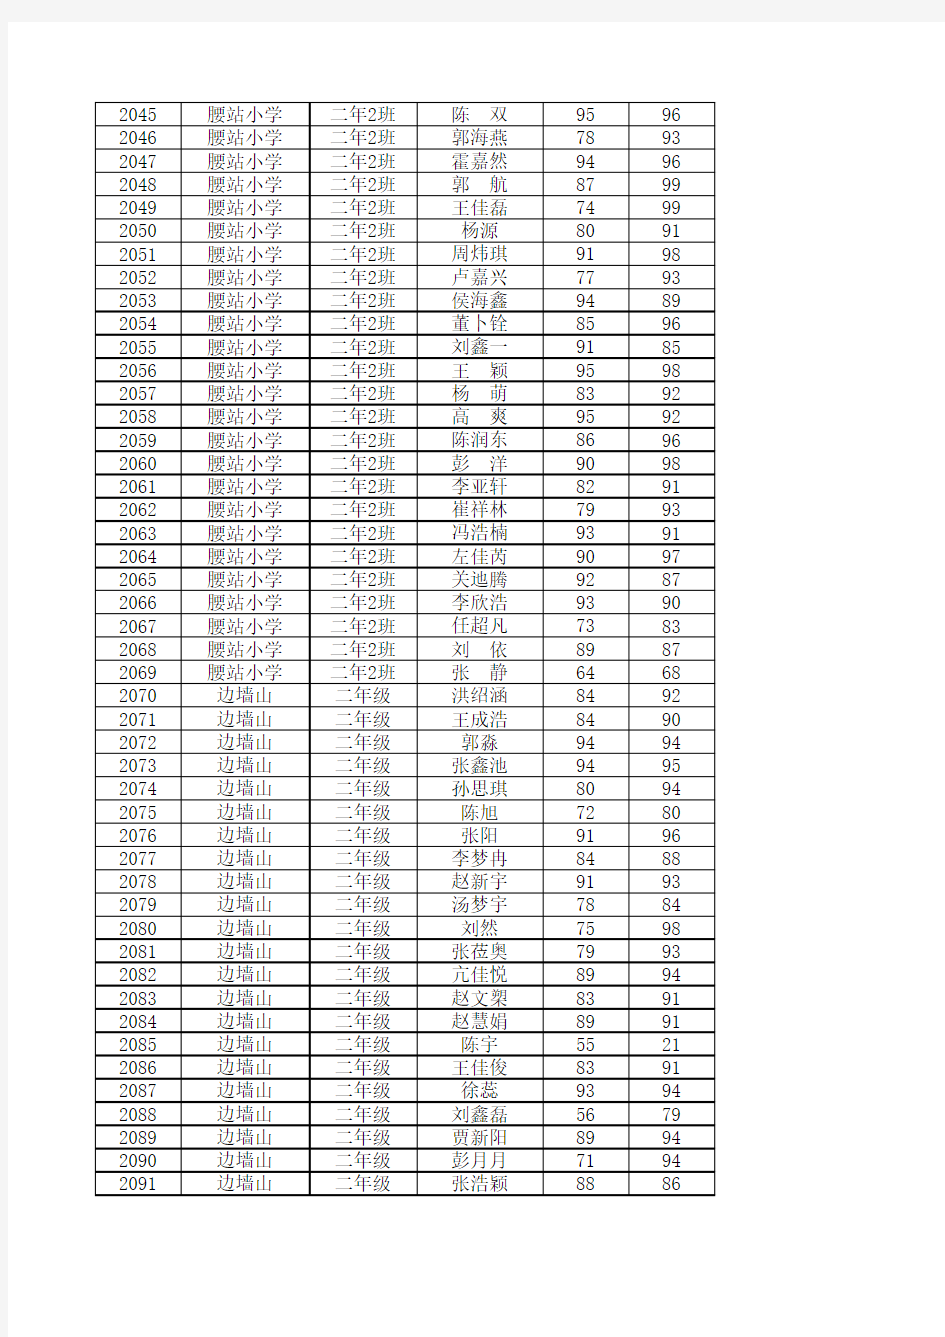 腰站学区2015年非毕业年级考试成绩表(汇总表) (1)